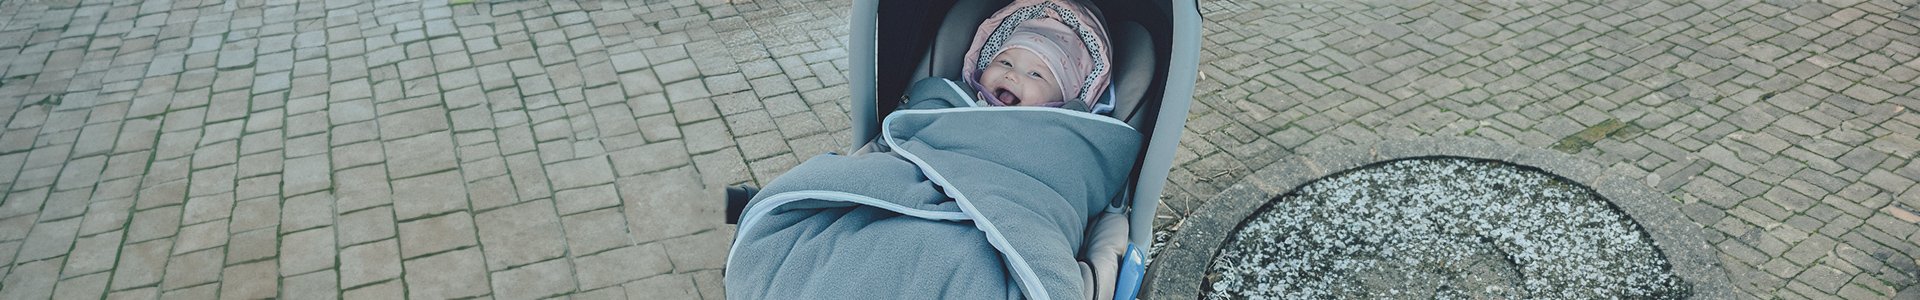 Kind lacht in Kinderwagen mit grauer Decke